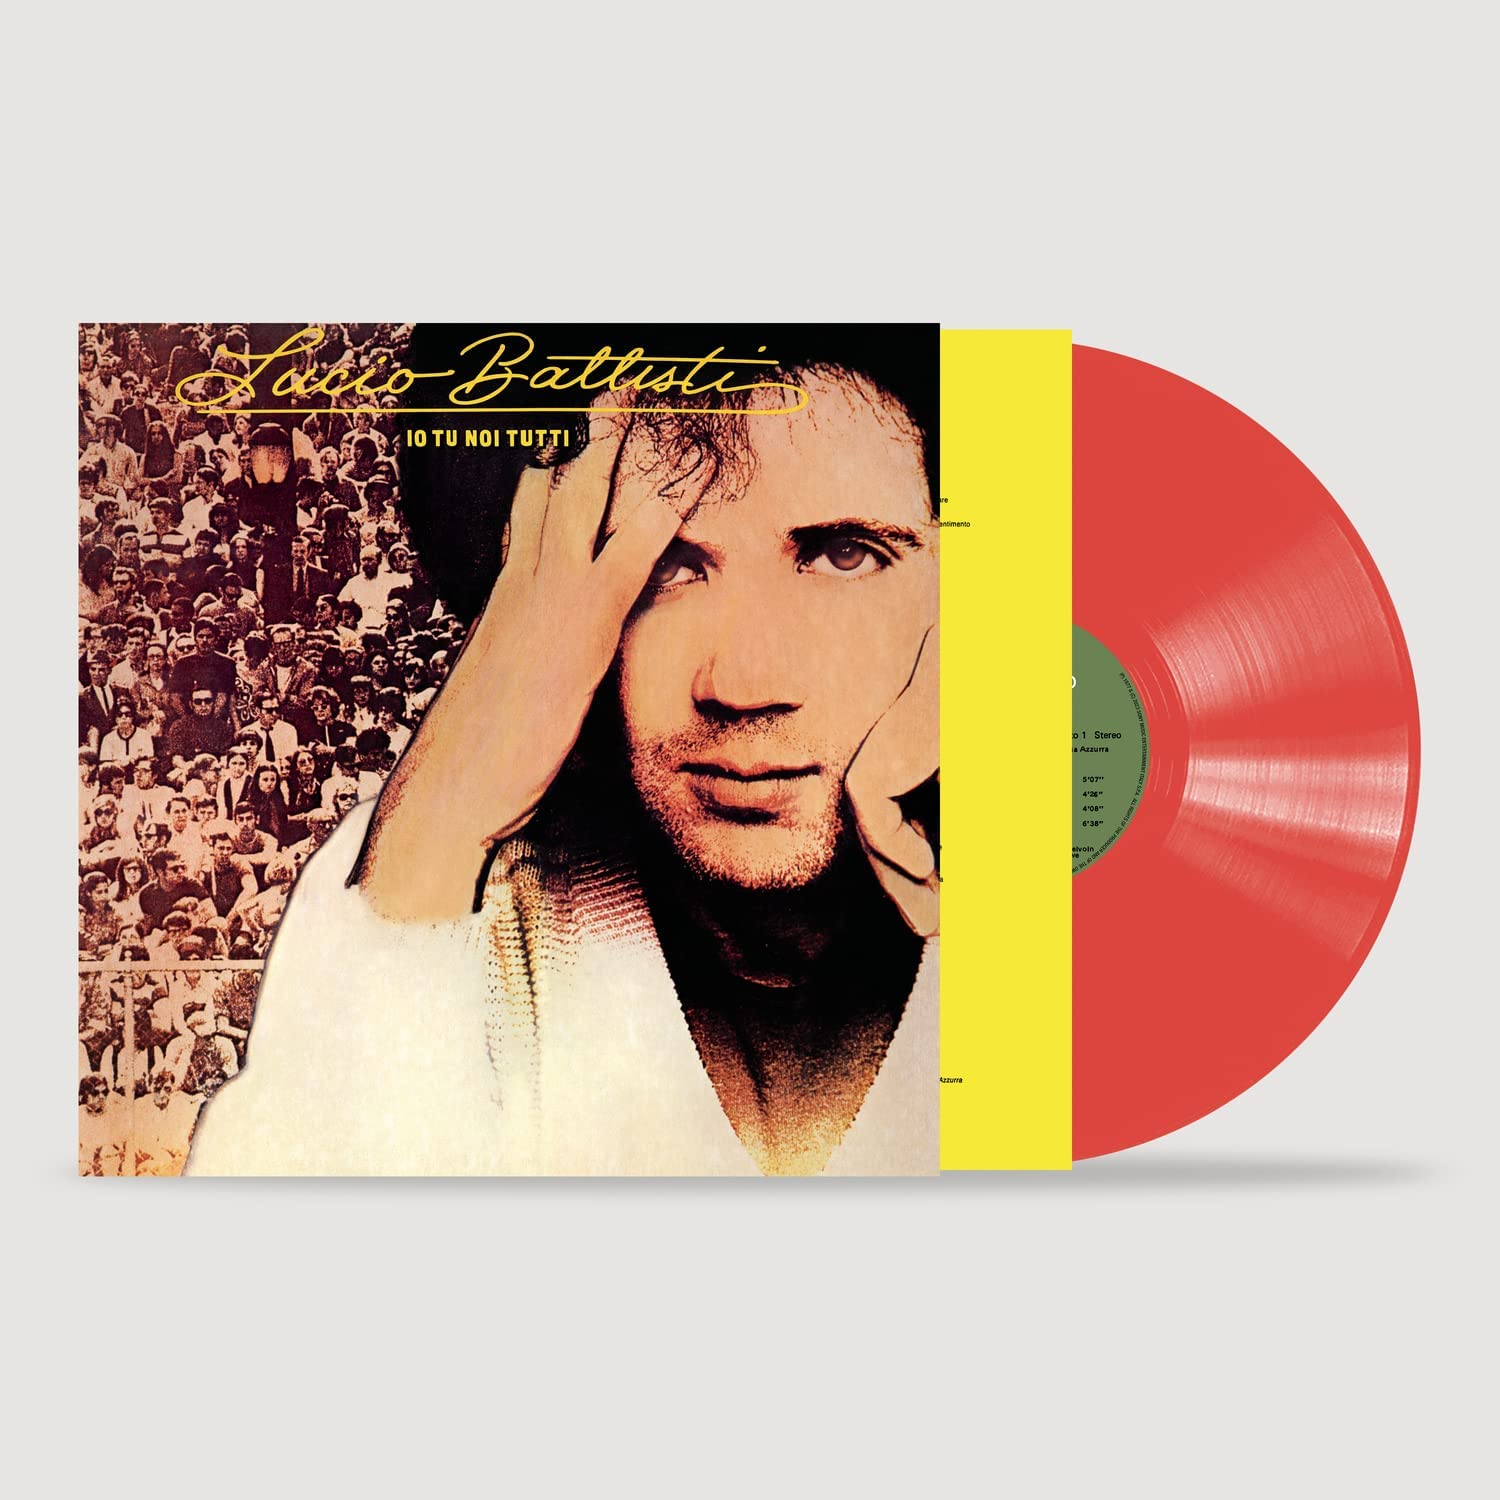 MUSICA ITALIANA - CD - VINILI - LP -: io tu noi tutti - lp vinile nuovo  chiuso edizione colorata rossa